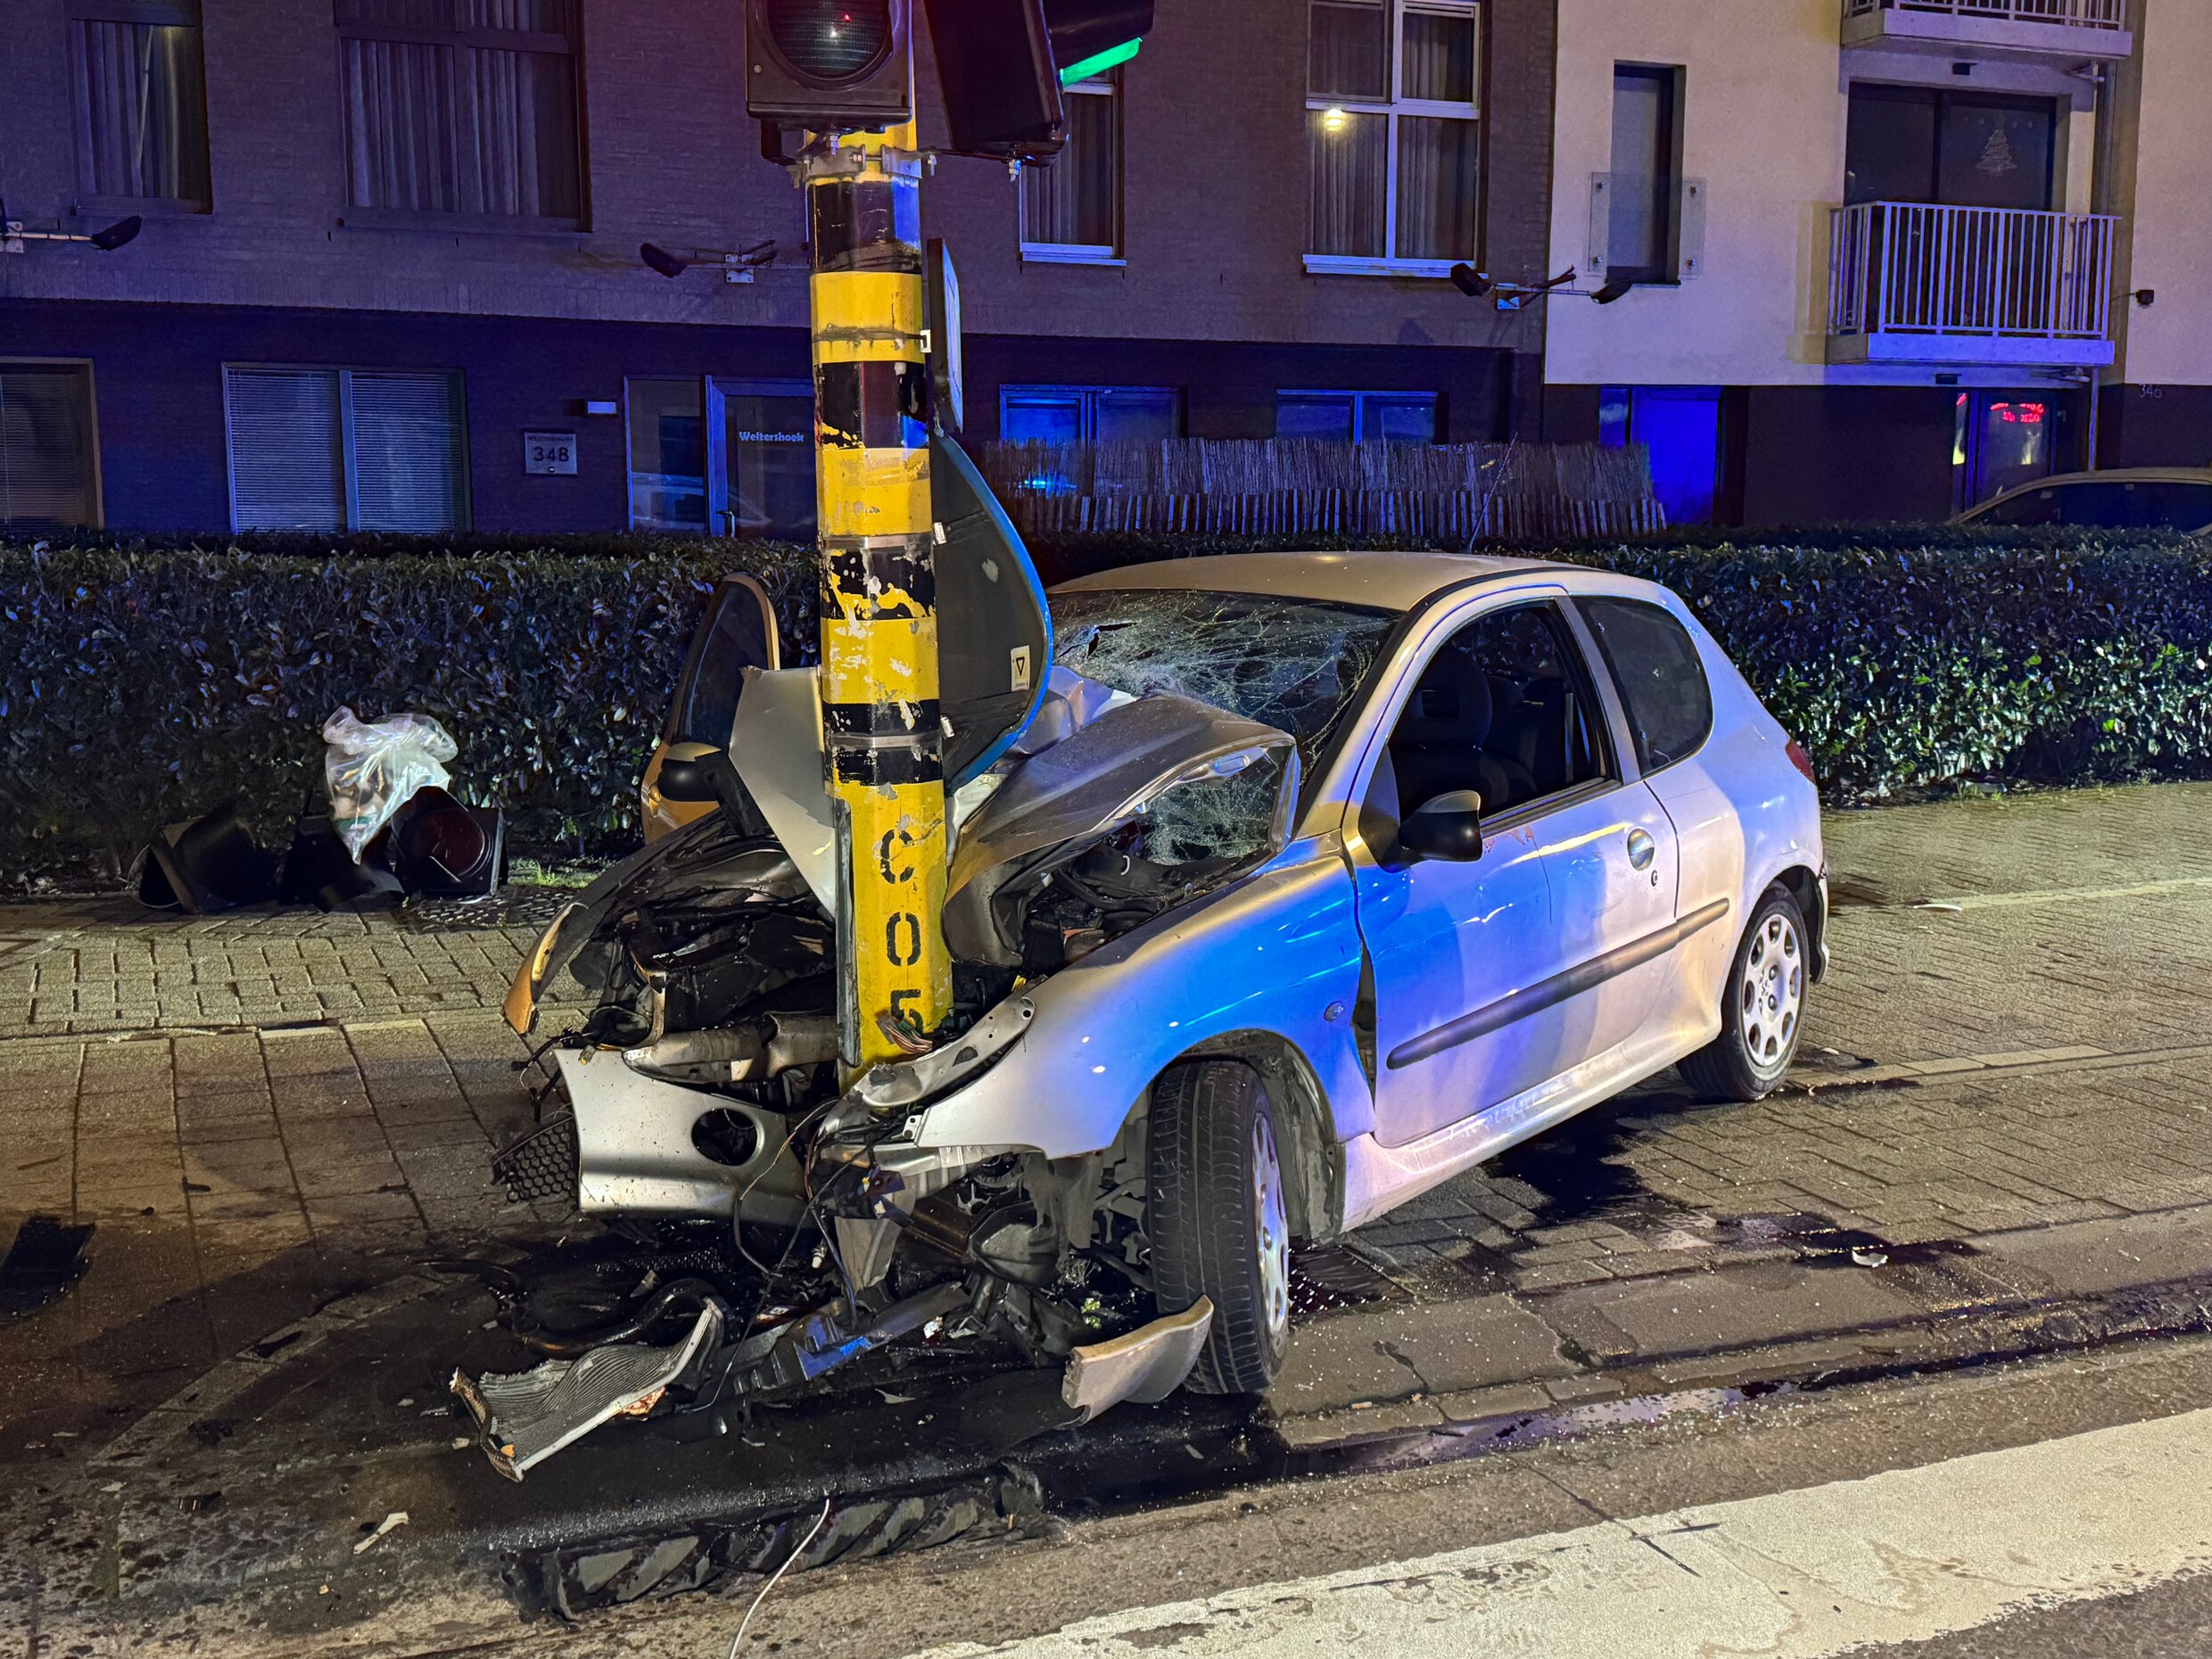 23-jarige chauffeur die auto met opzet aanreed in Deurne geeft zichzelf aan, slachtoffers buiten levensgevaar